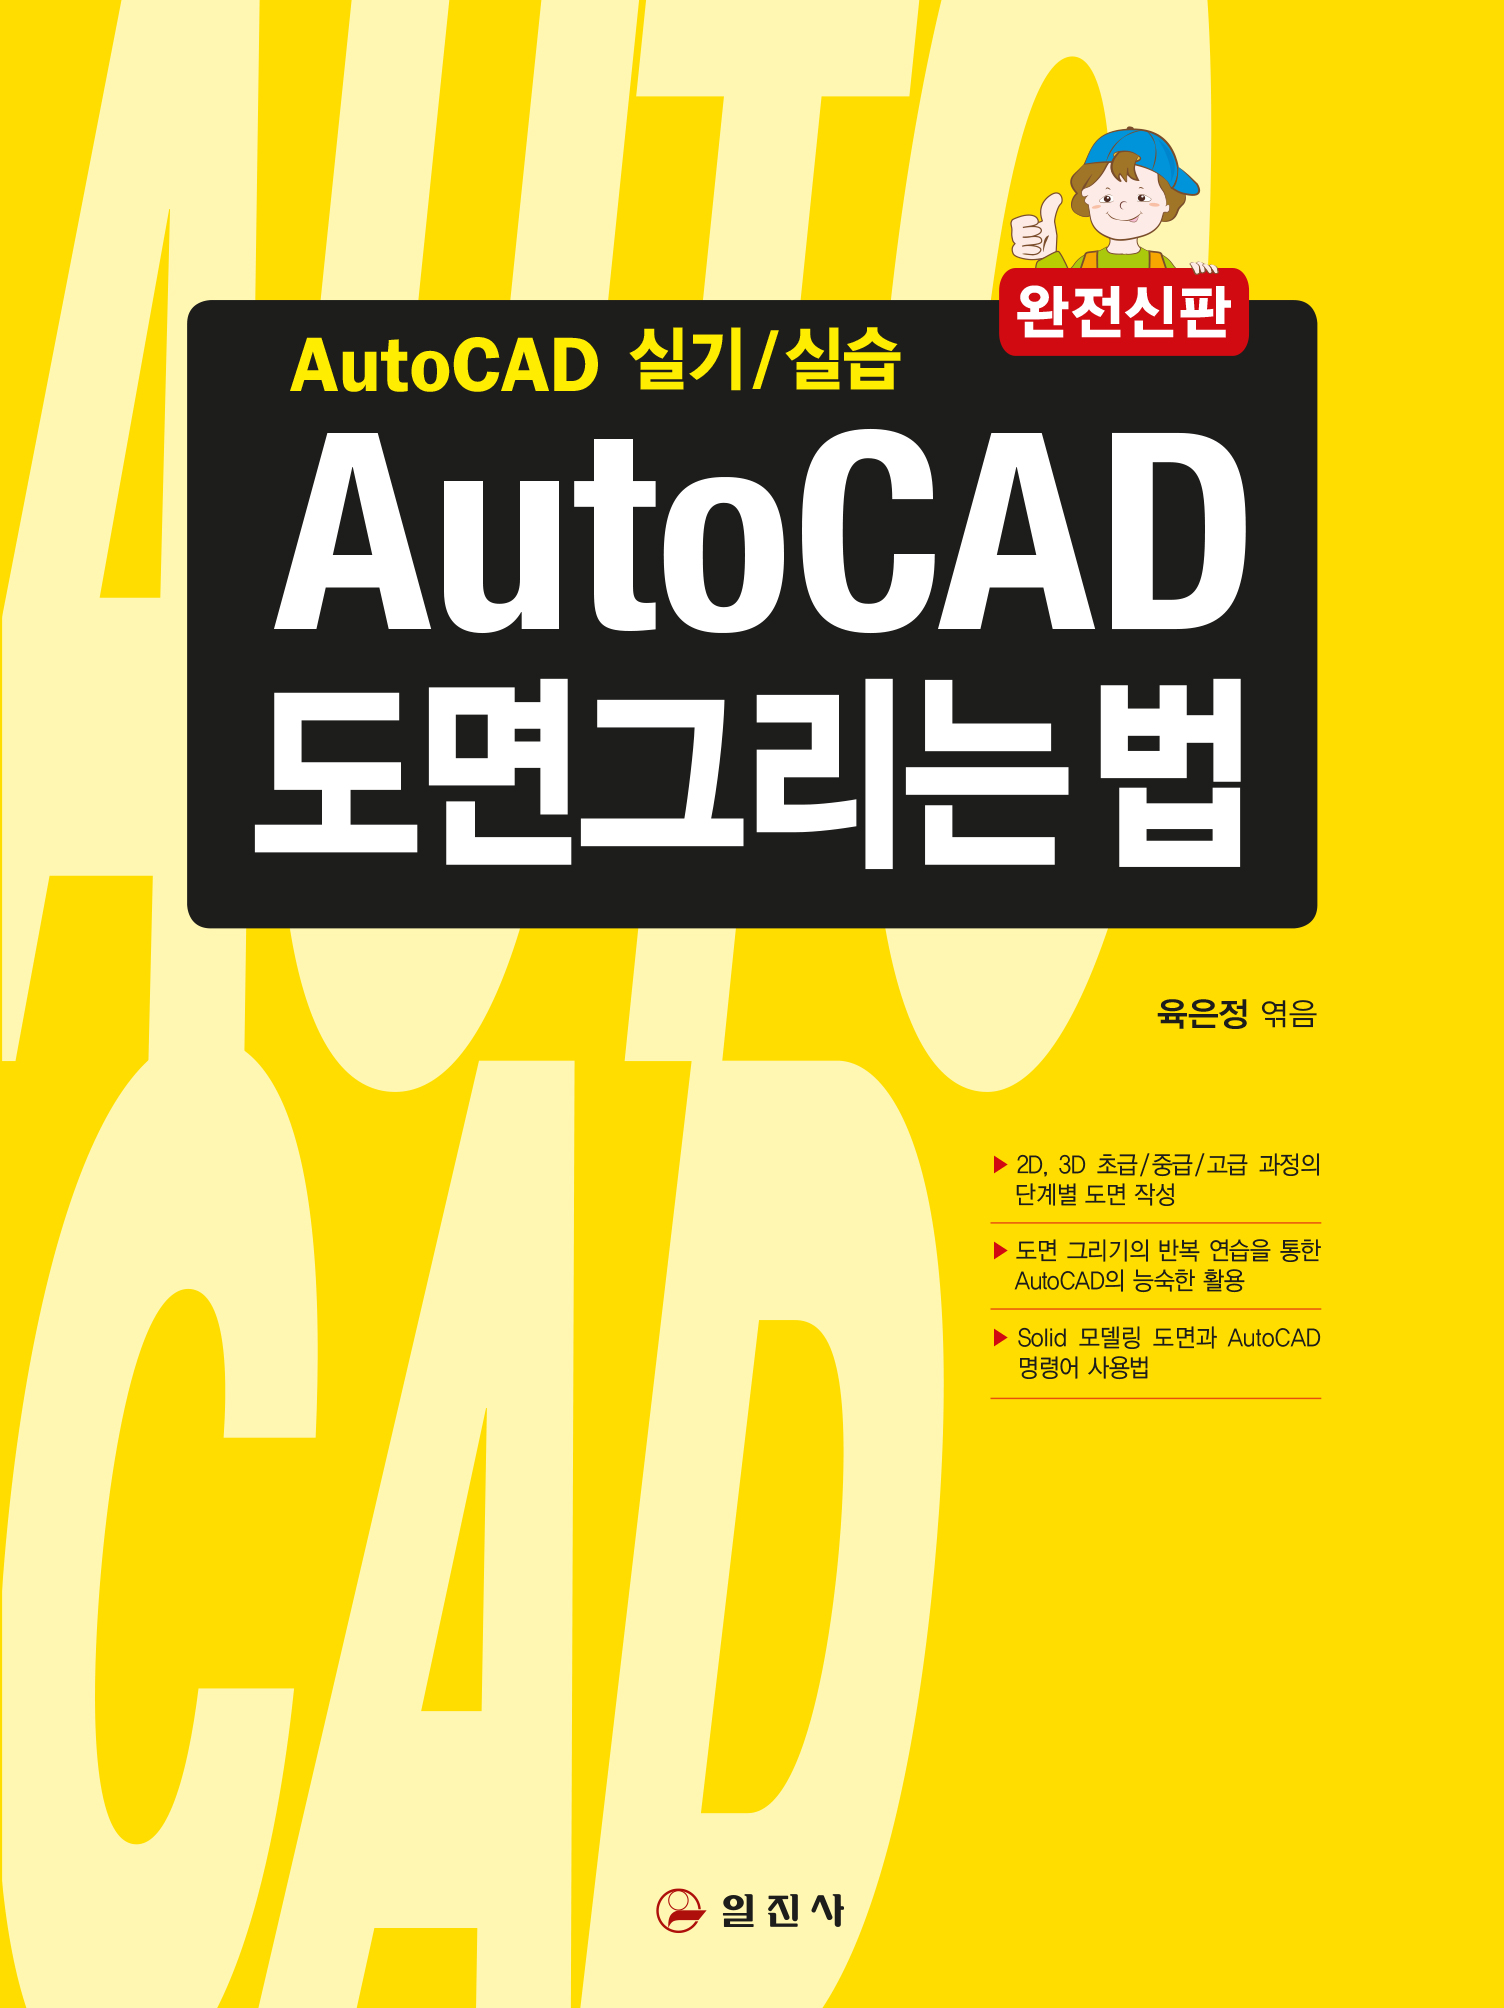 AutoCAD 도면그리는 법